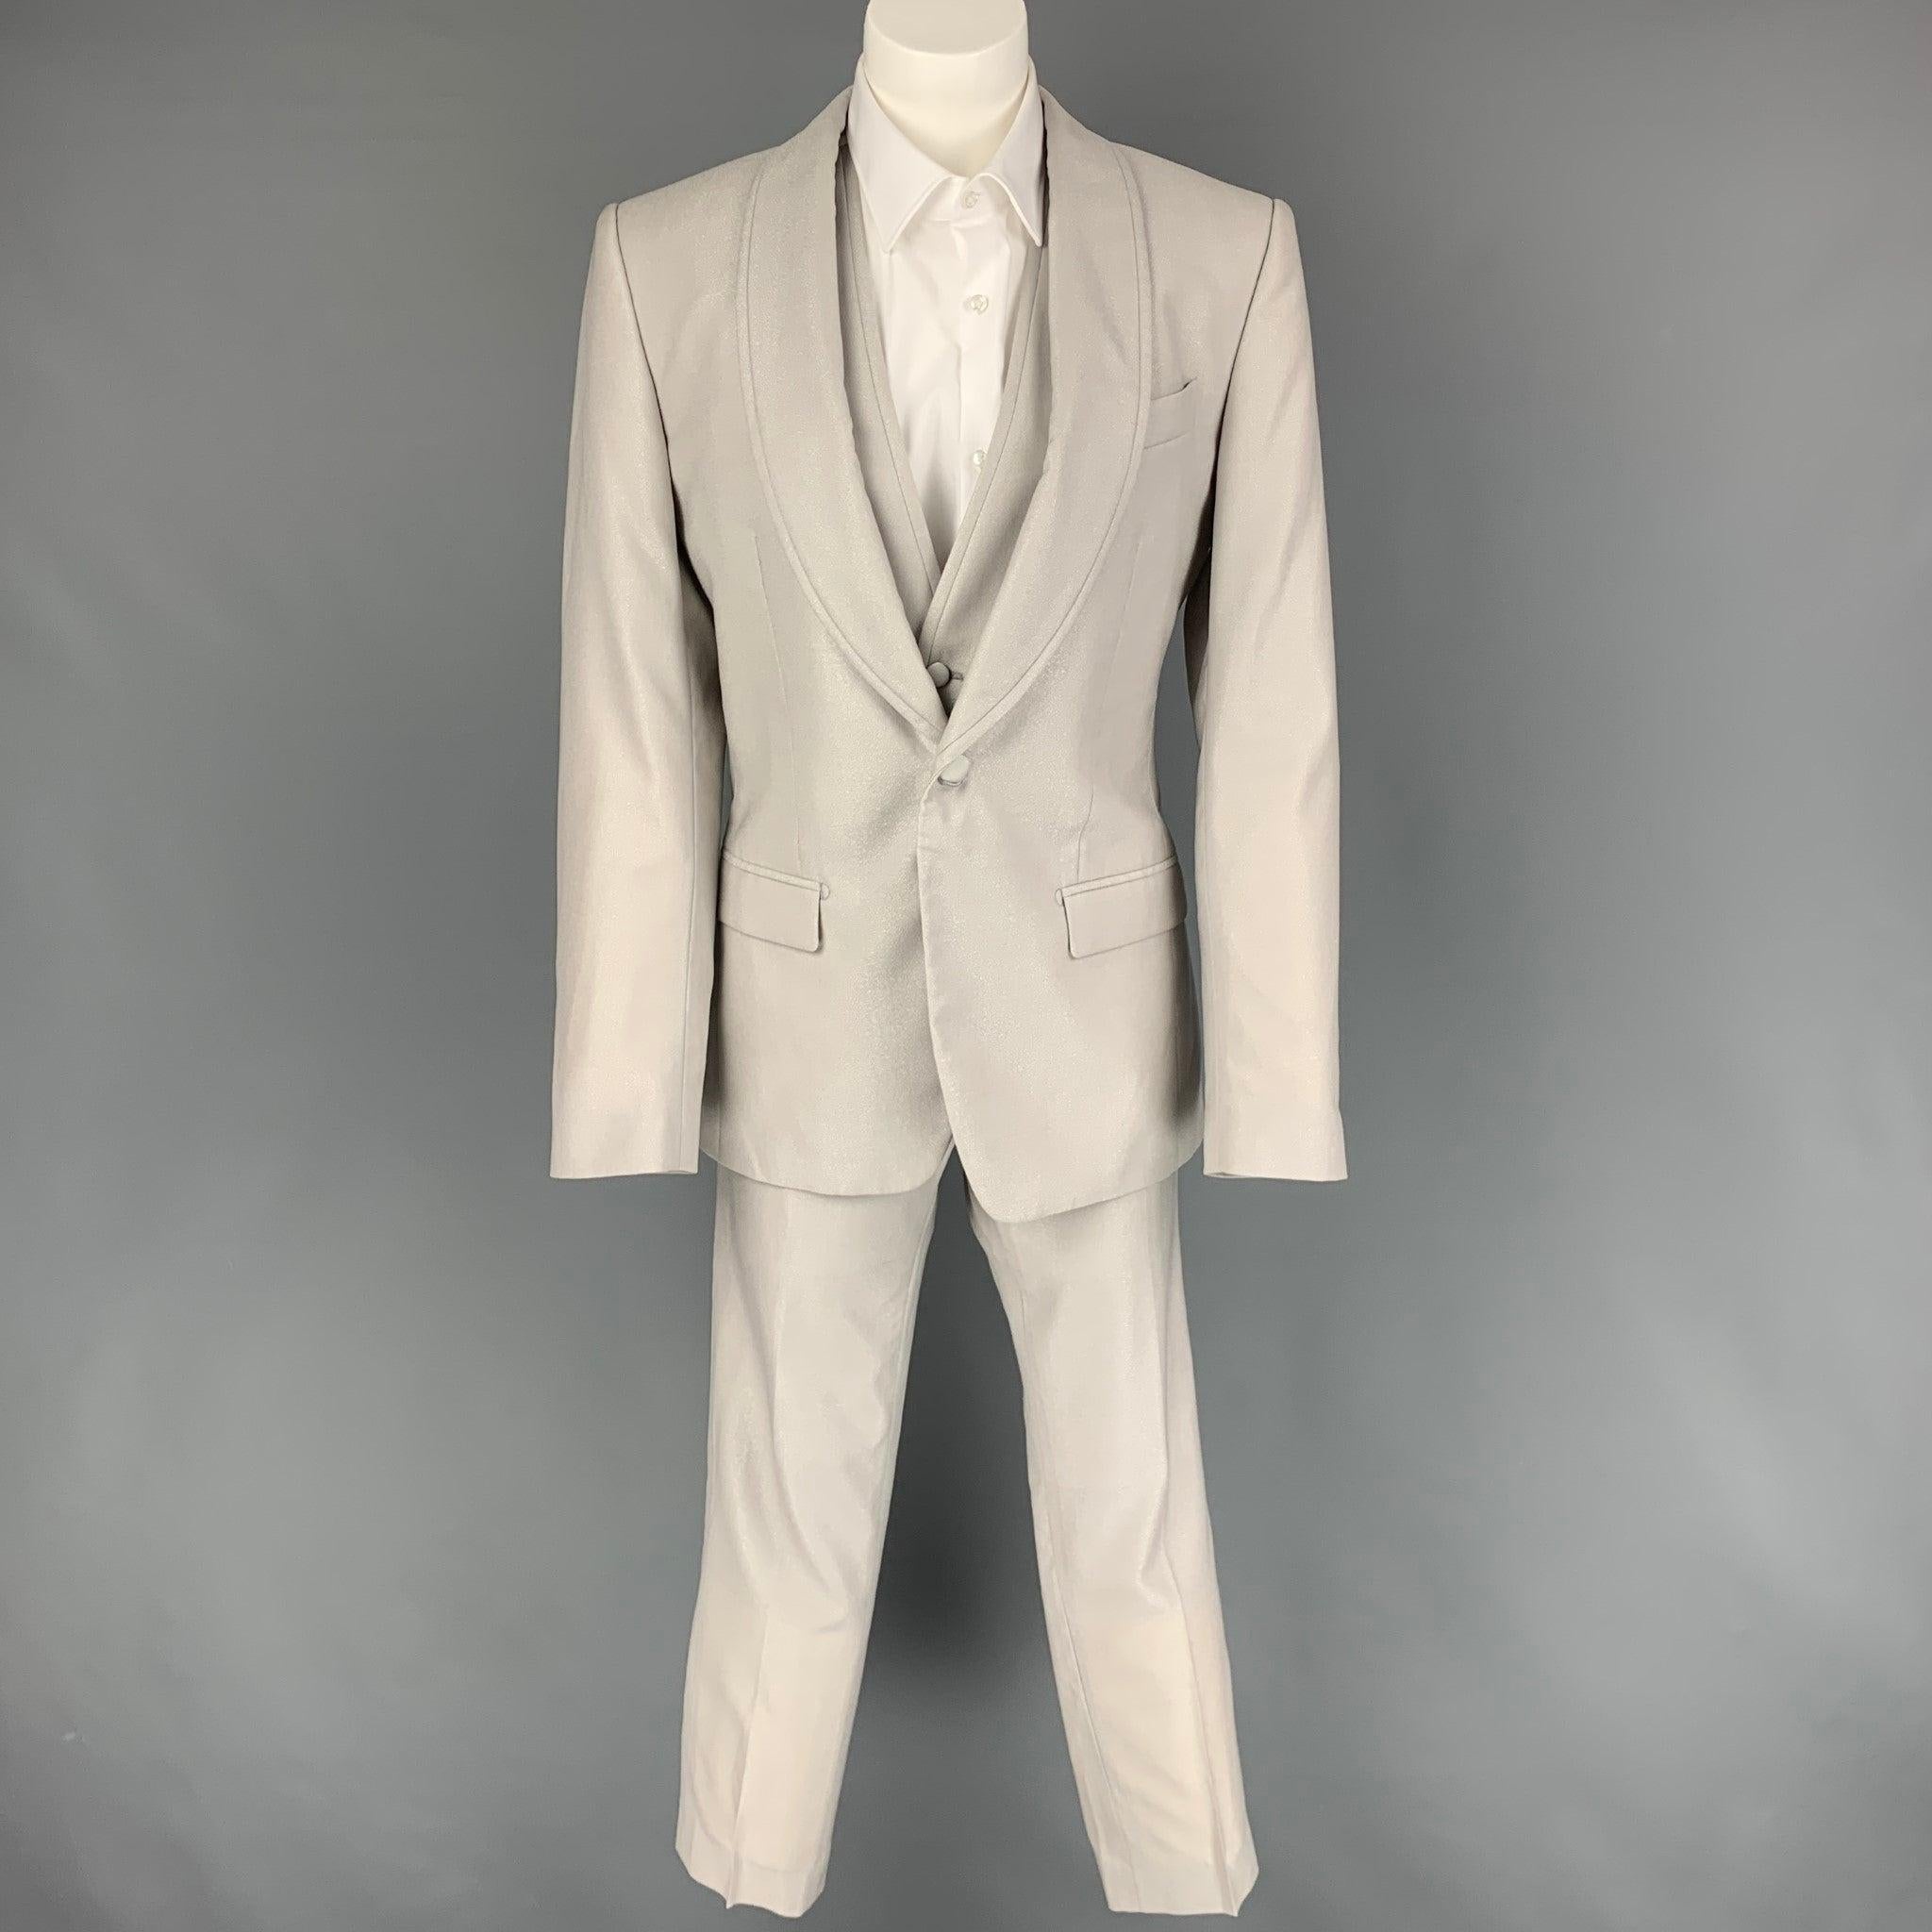 DOLCE & GABBANA 3 pièces
Le costume est en laine/soie grise avec une doublure complète et comprend un simple boutonnage,
 Manteau de sport à un bouton, col châle, gilet assorti et pantalon à devant plat. Fabriquées en Italie. Très bon état